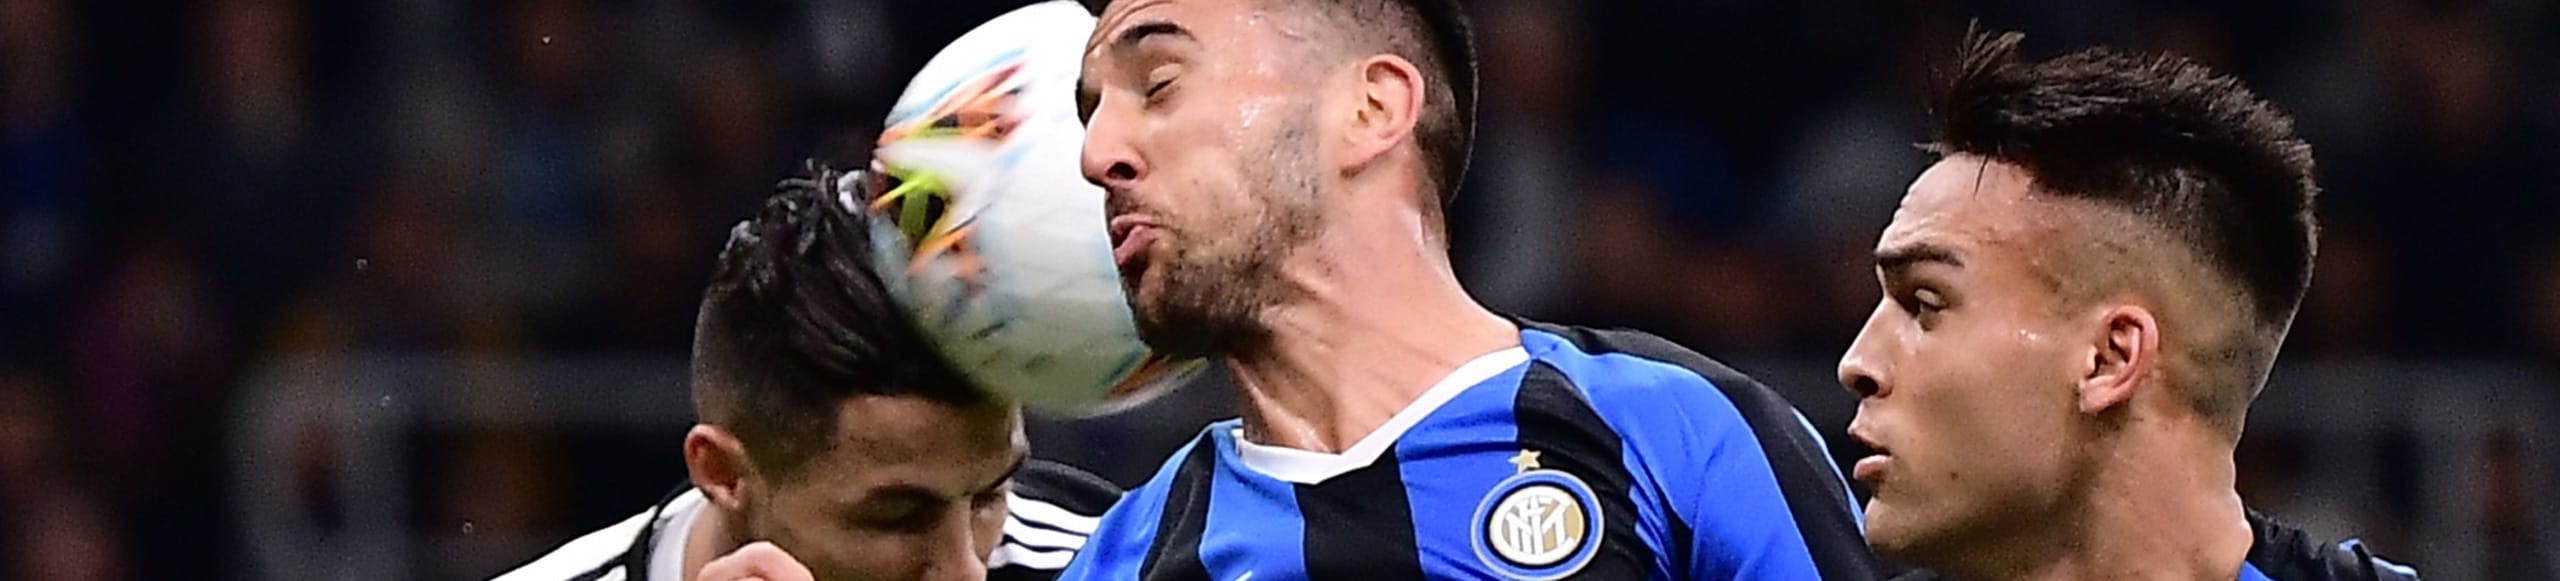 Pronostico Juventus-Inter, il derby d'Italia con vista Scudetto - Le ultimissime sulle formazioni